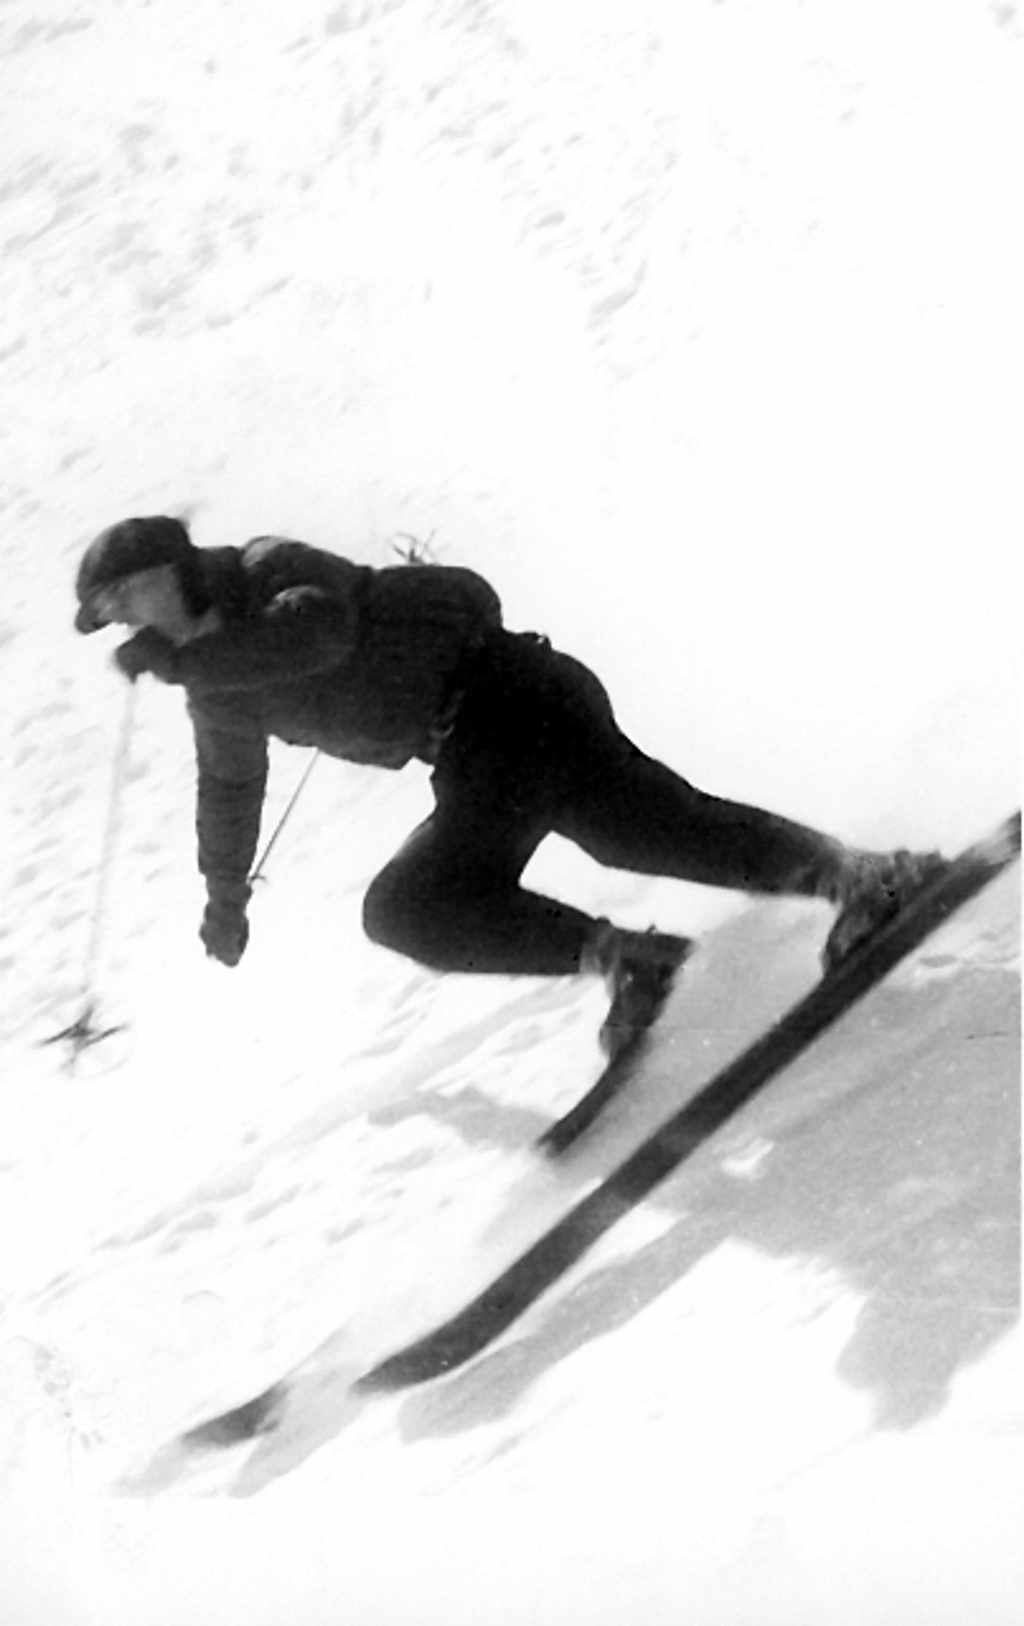 skieur en plein descente des pistes raides de Chamonix